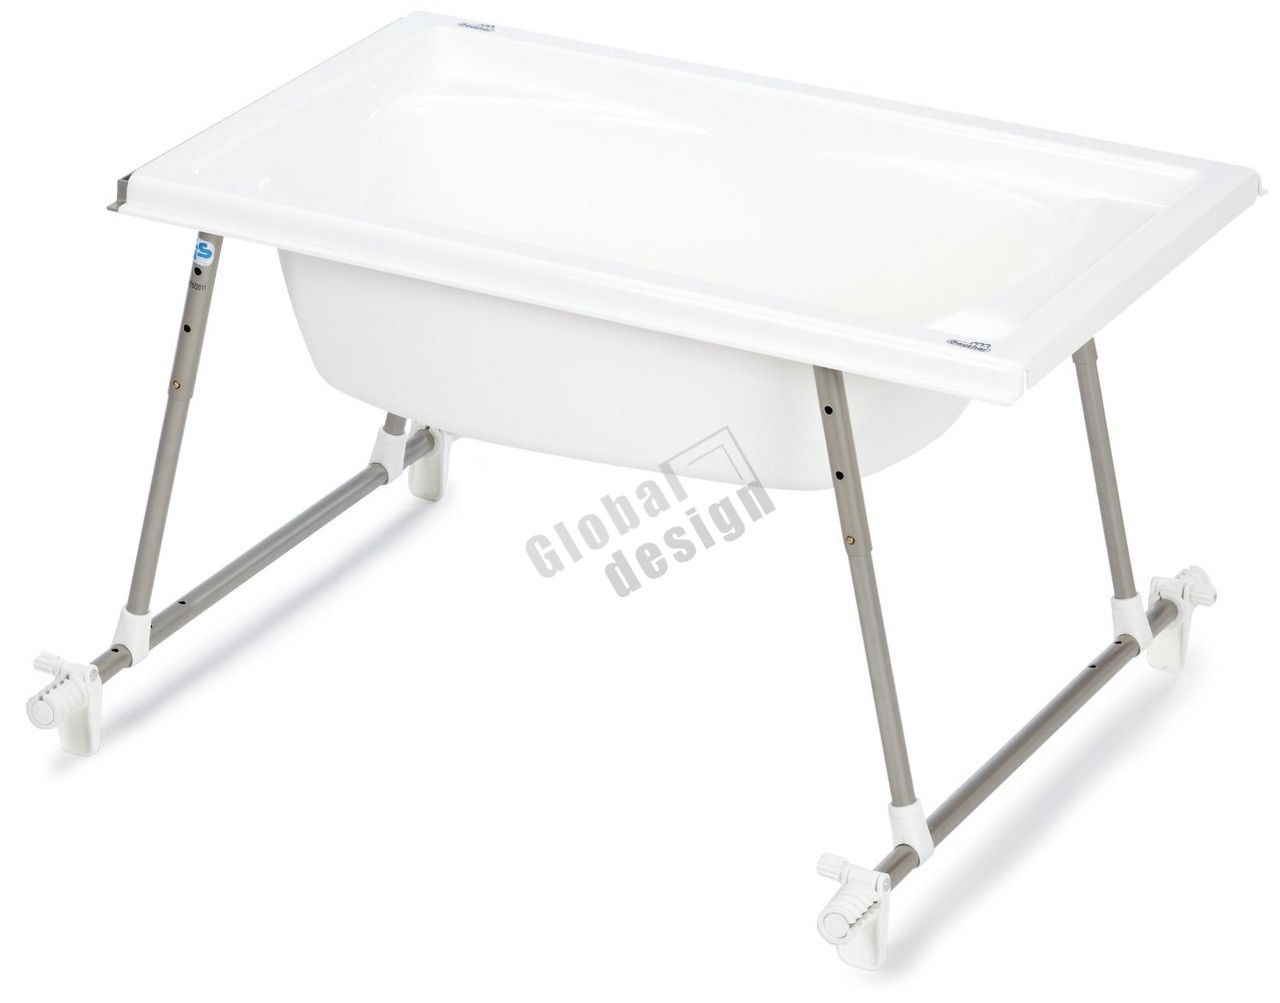 Столик для купания (с ванночкой) и пеленания Geuther Aqualight 4822